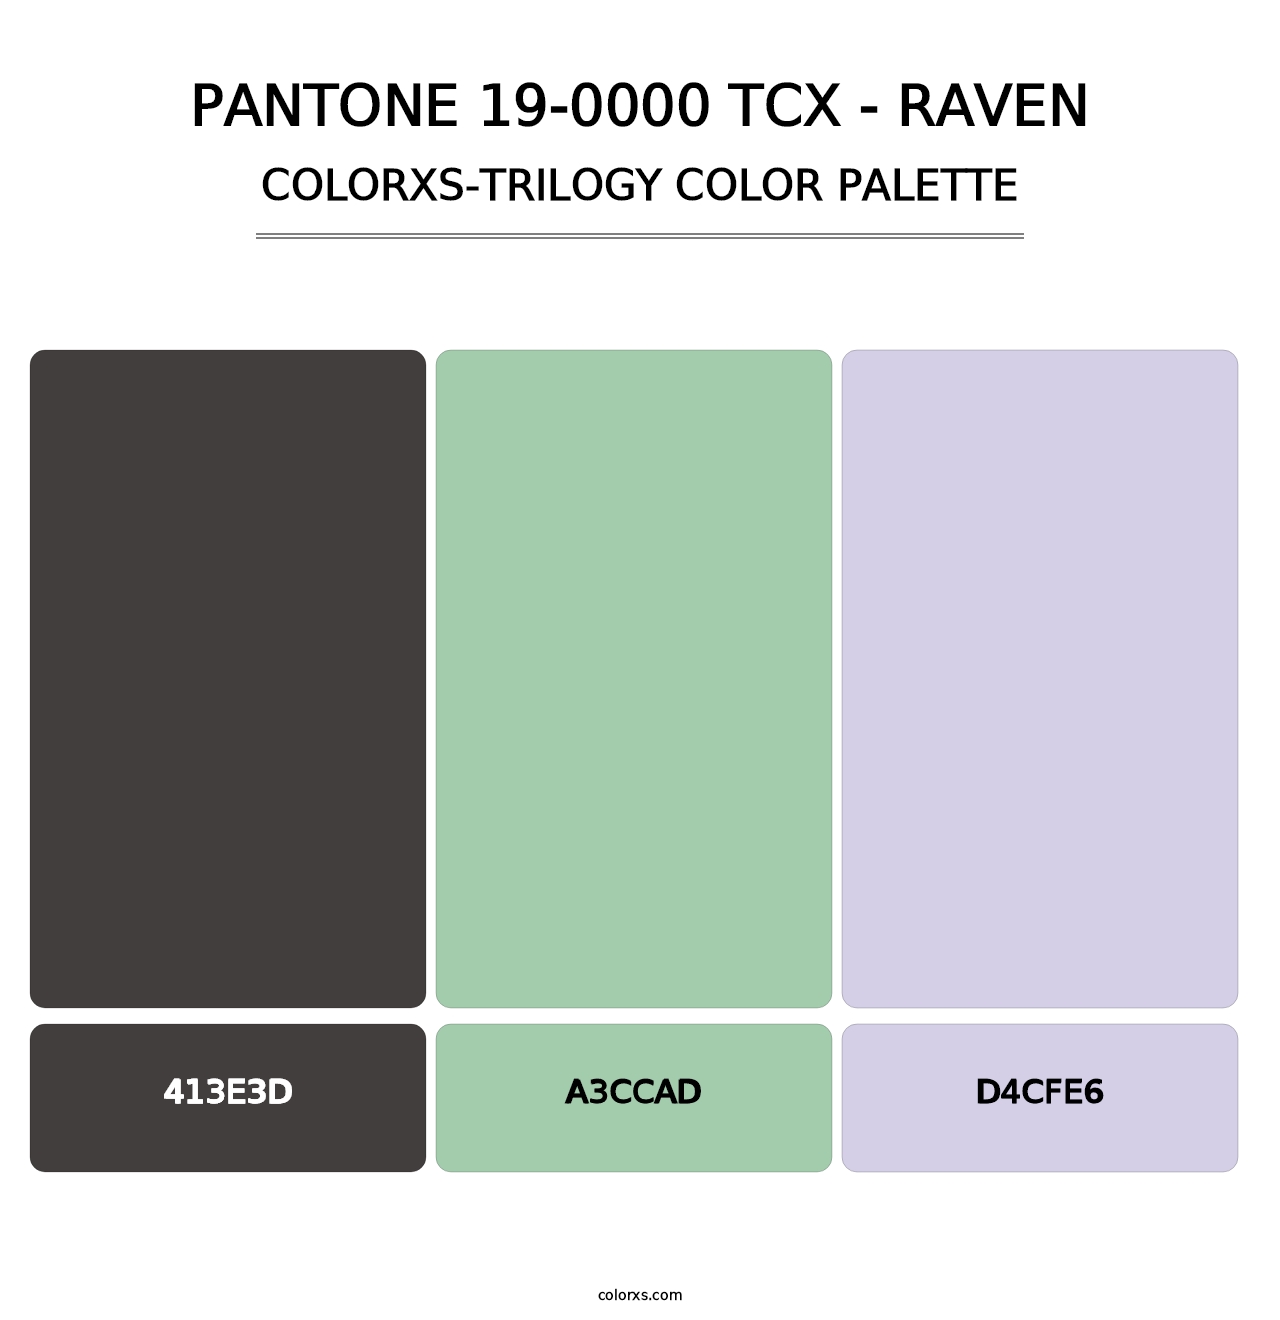 PANTONE 19-0000 TCX - Raven - Colorxs Trilogy Palette